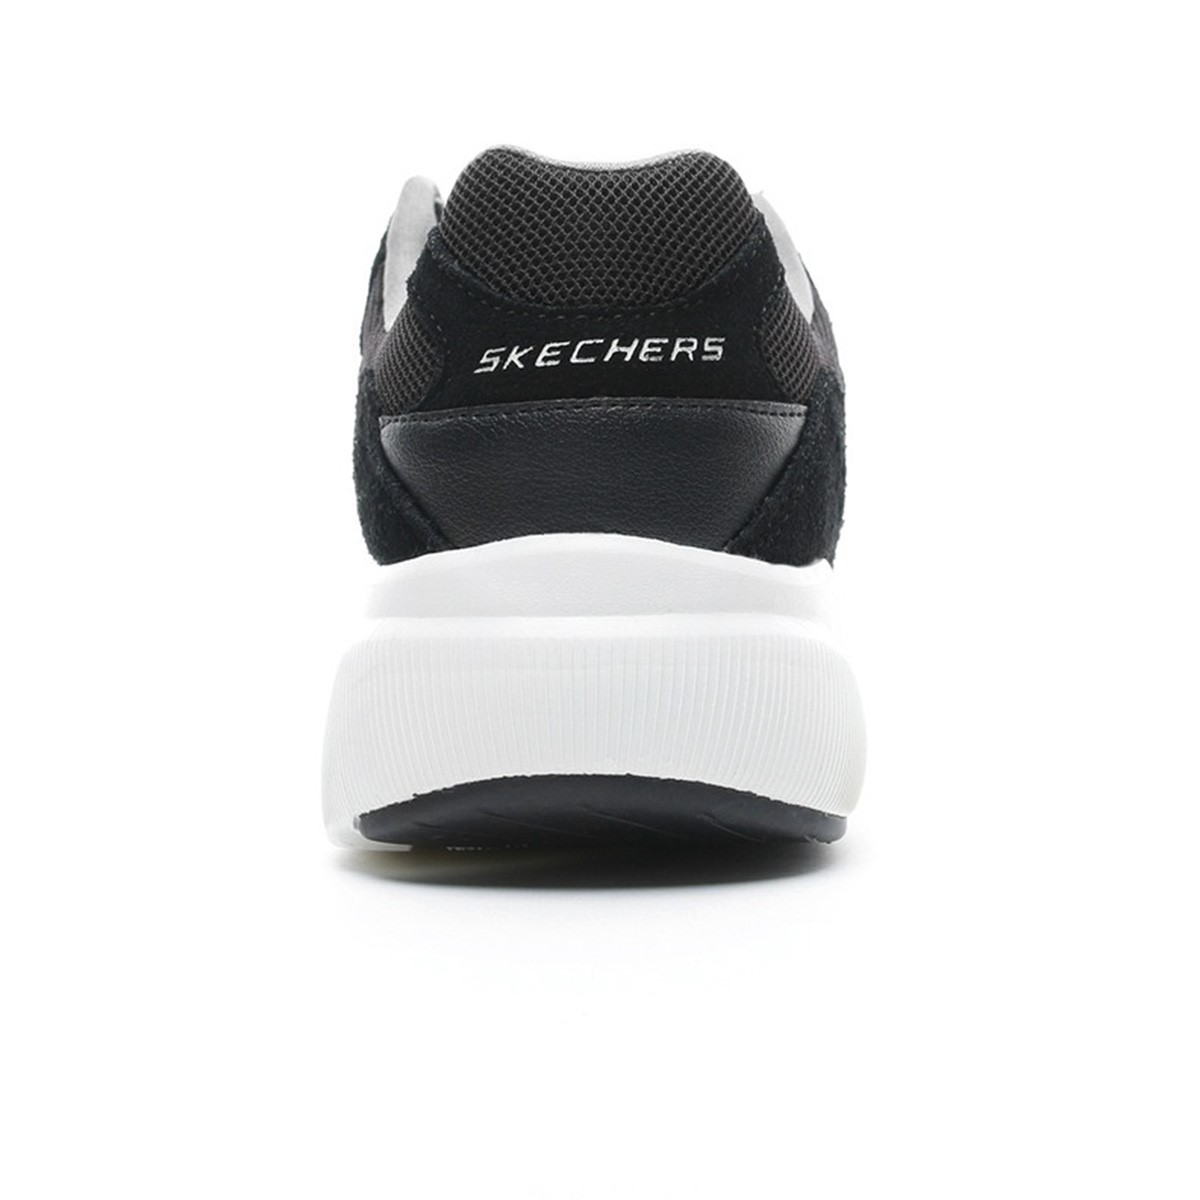 Skechers Erkek Ayakkabı 52952 Siyah/Beyaz